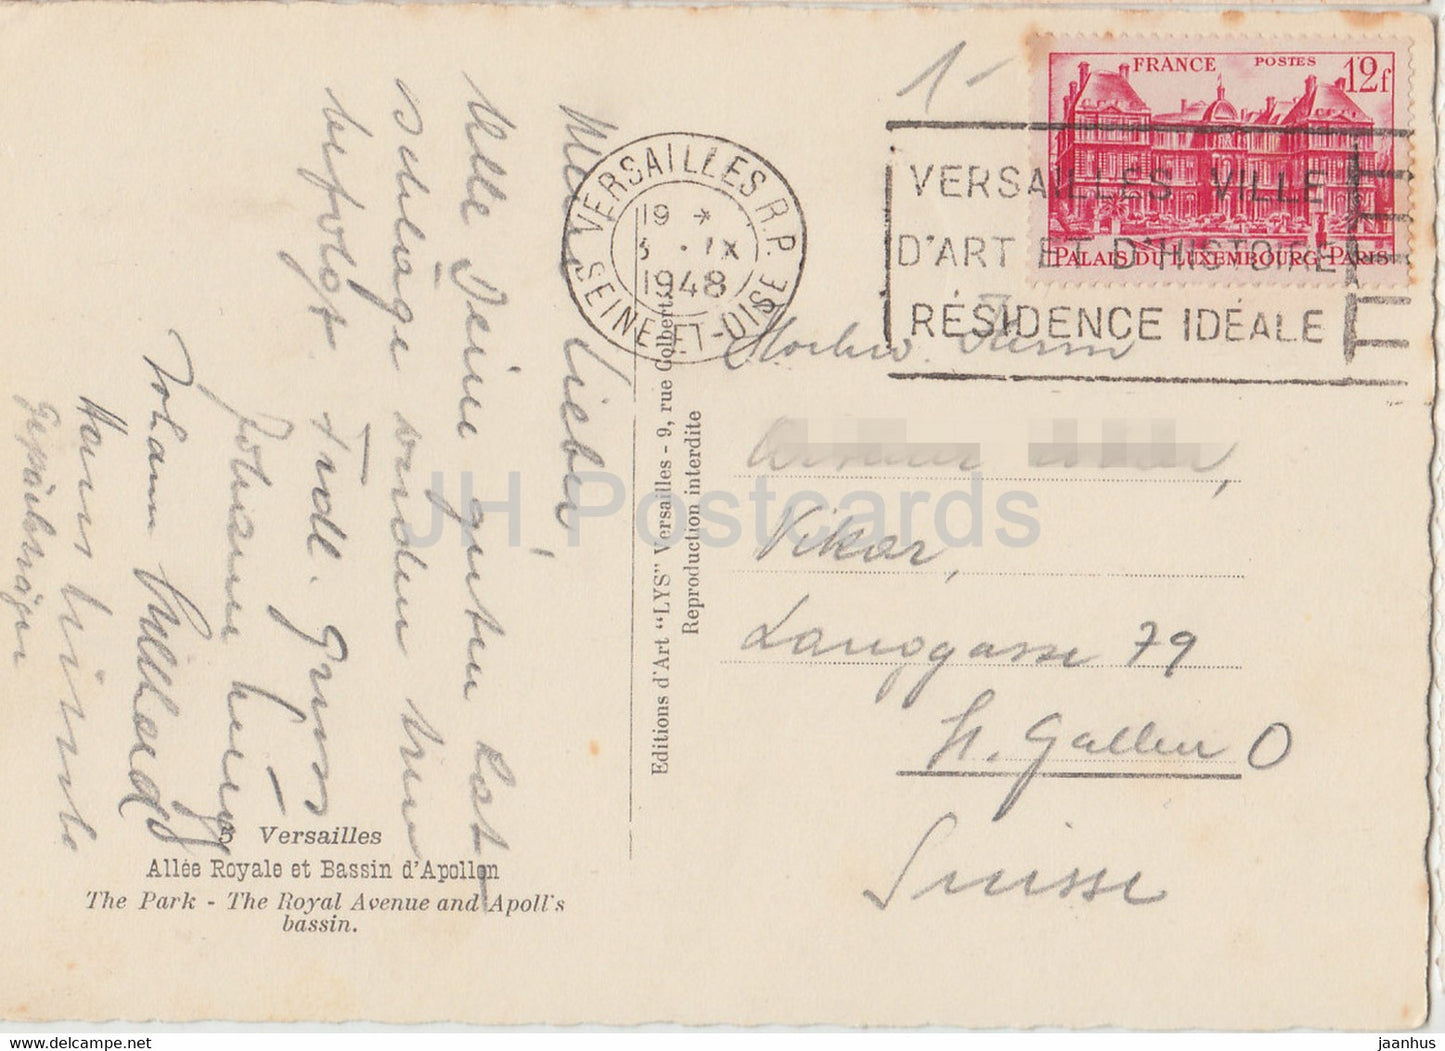 Versailles - Allee Royale et Bassin d'Appolon - Der Park - Royal Avenue - alte Postkarte - 1948 - Frankreich - gebraucht